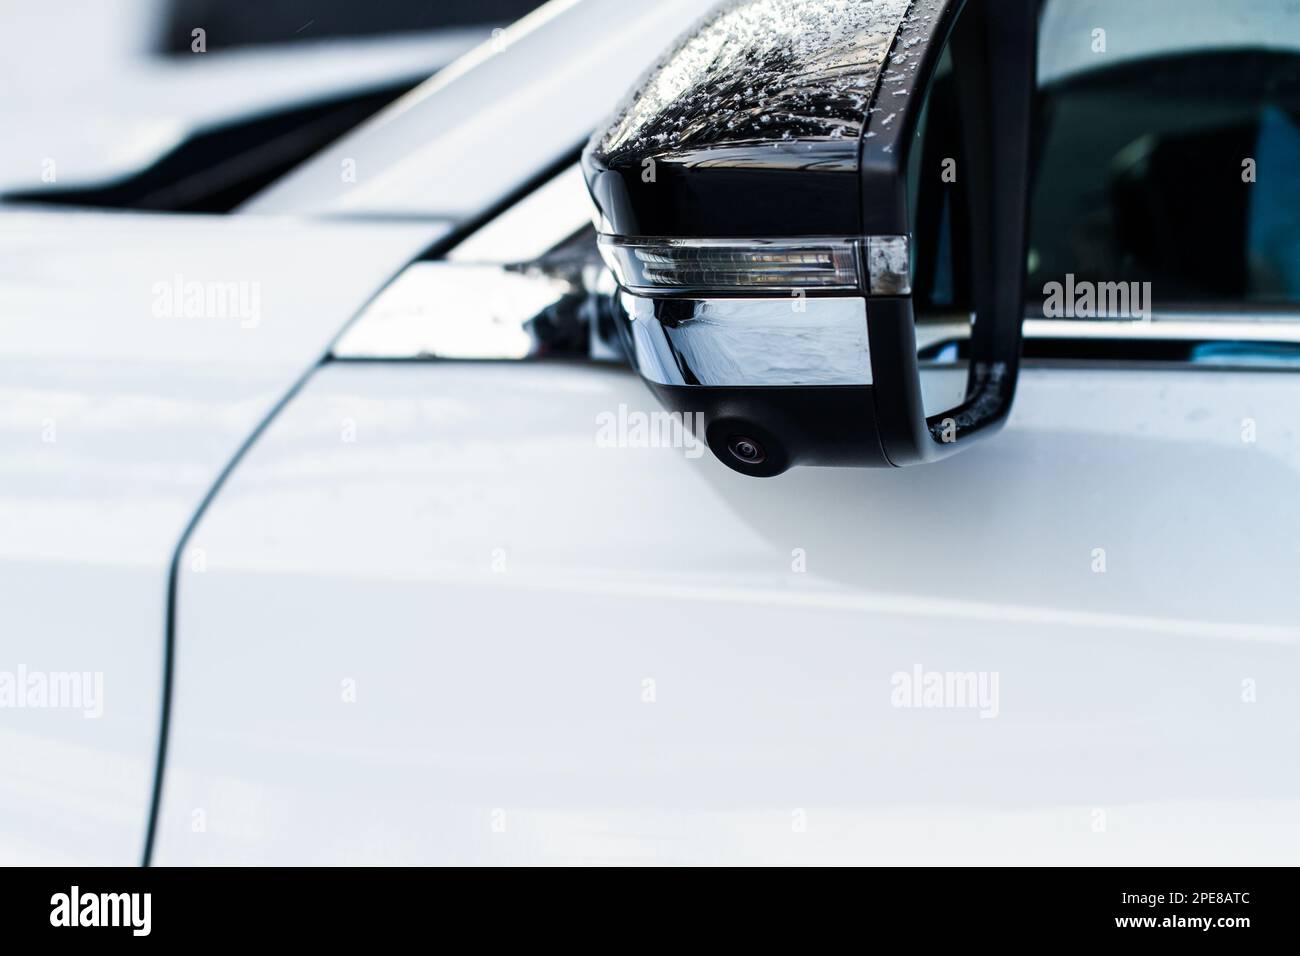 Vista ravvicinata del sistema di telecamere per la visione periferica sul moderno specchietto retrovisore lato auto. Telecamera dei punti ciechi e del parcheggio assistito. Telecamera del parcheggio assistito. Foto Stock